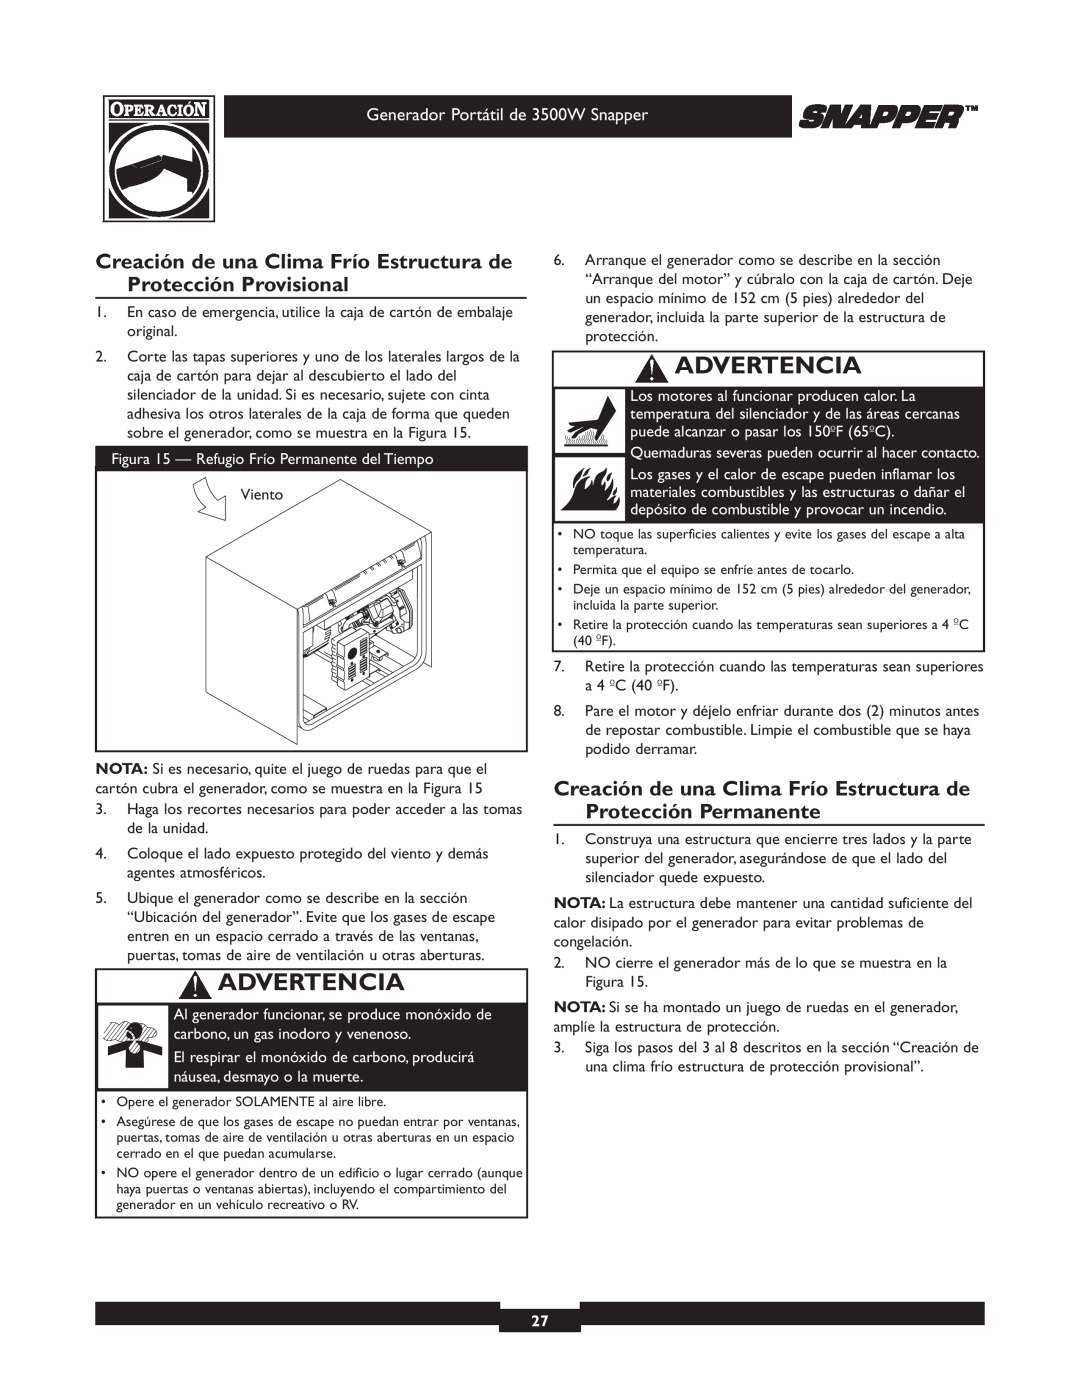 Snapper 3500 manual Creación de una Clima Frío Estructura de Protección Provisional, Advertencia 